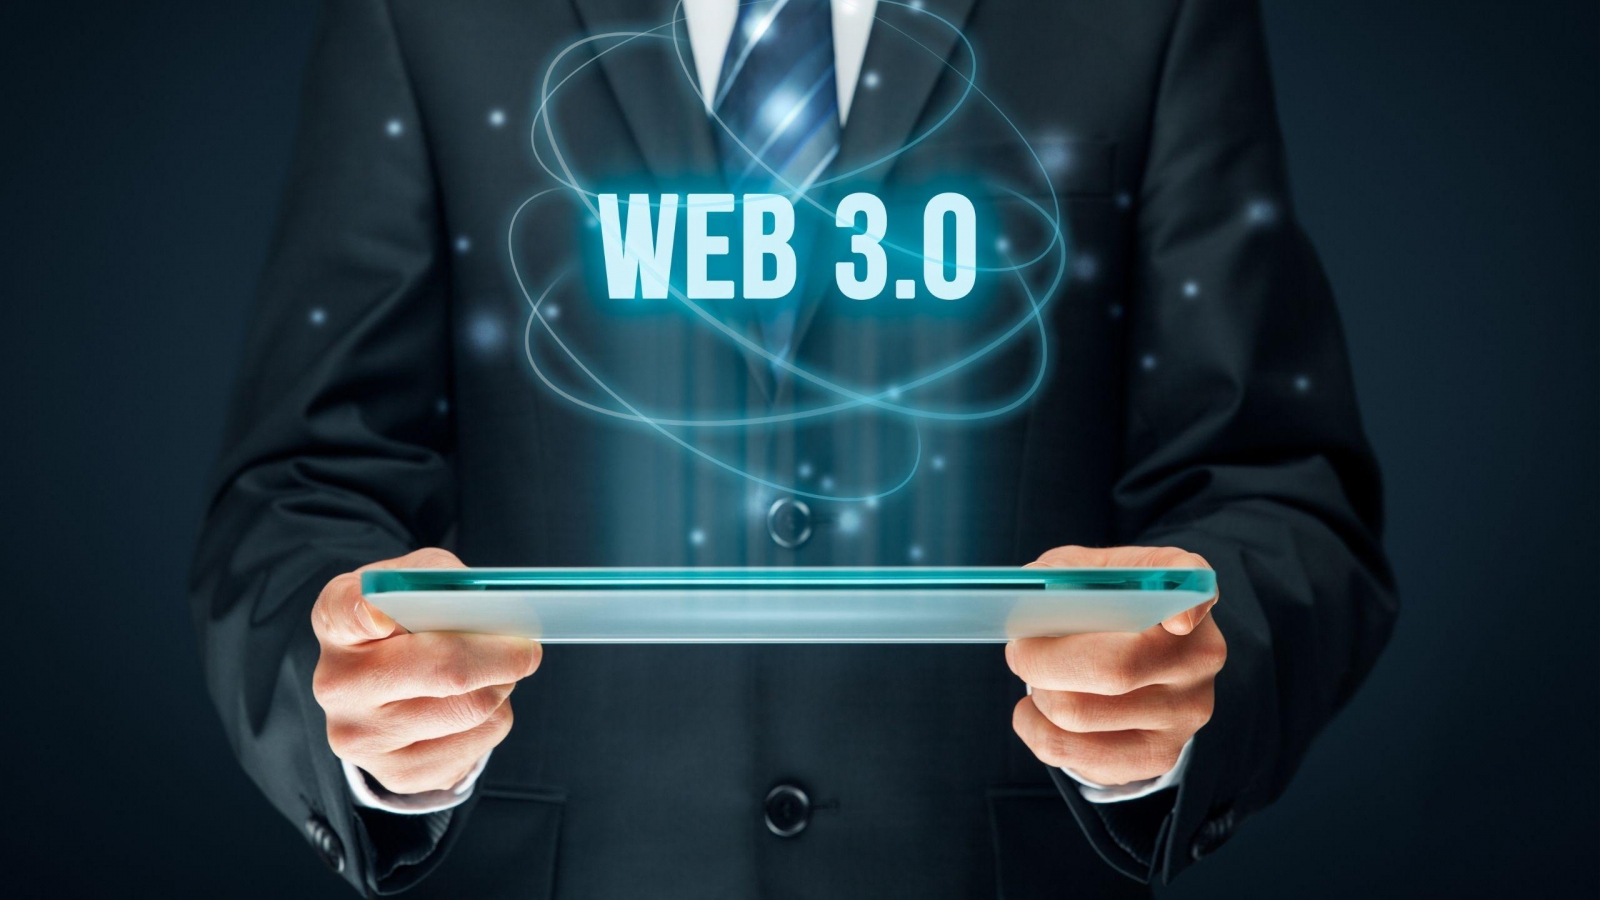 Web 3.0 Nedir? Temel Özellikleri Nelerdir?